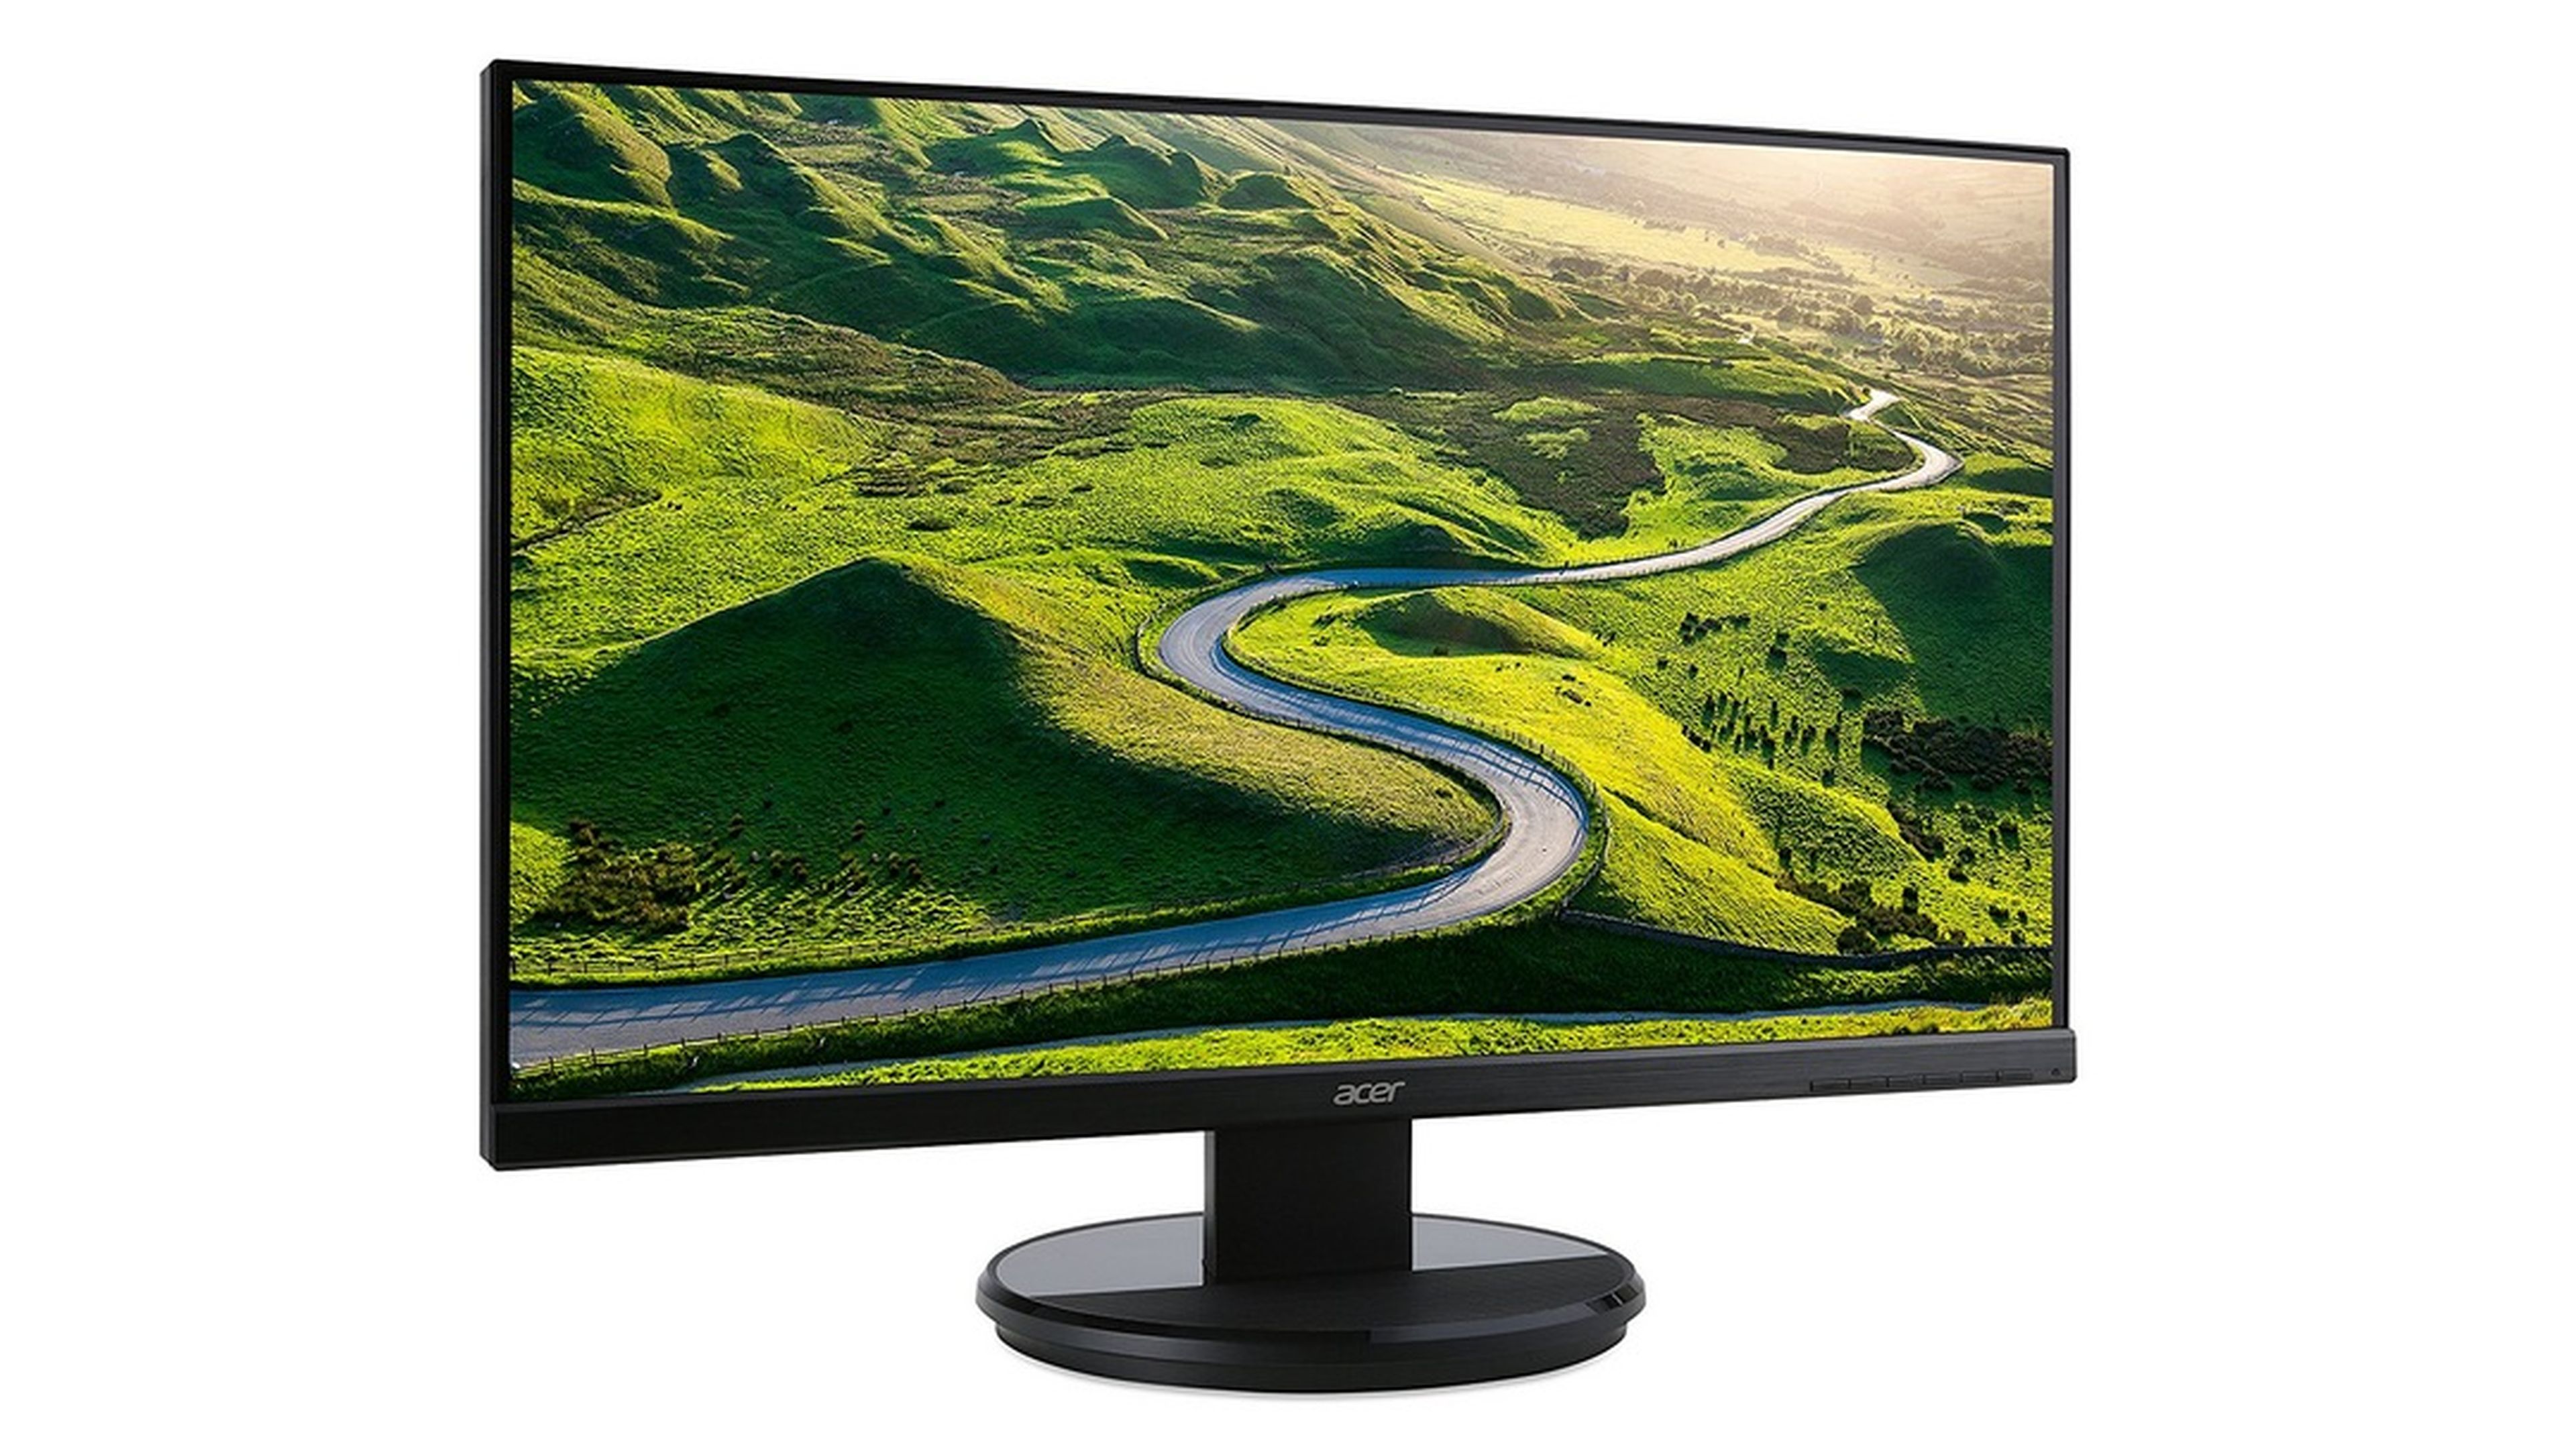 conformidad Alienación De ninguna manera Los 10 mejores monitores baratos para PC que puedes comprar | Computer Hoy